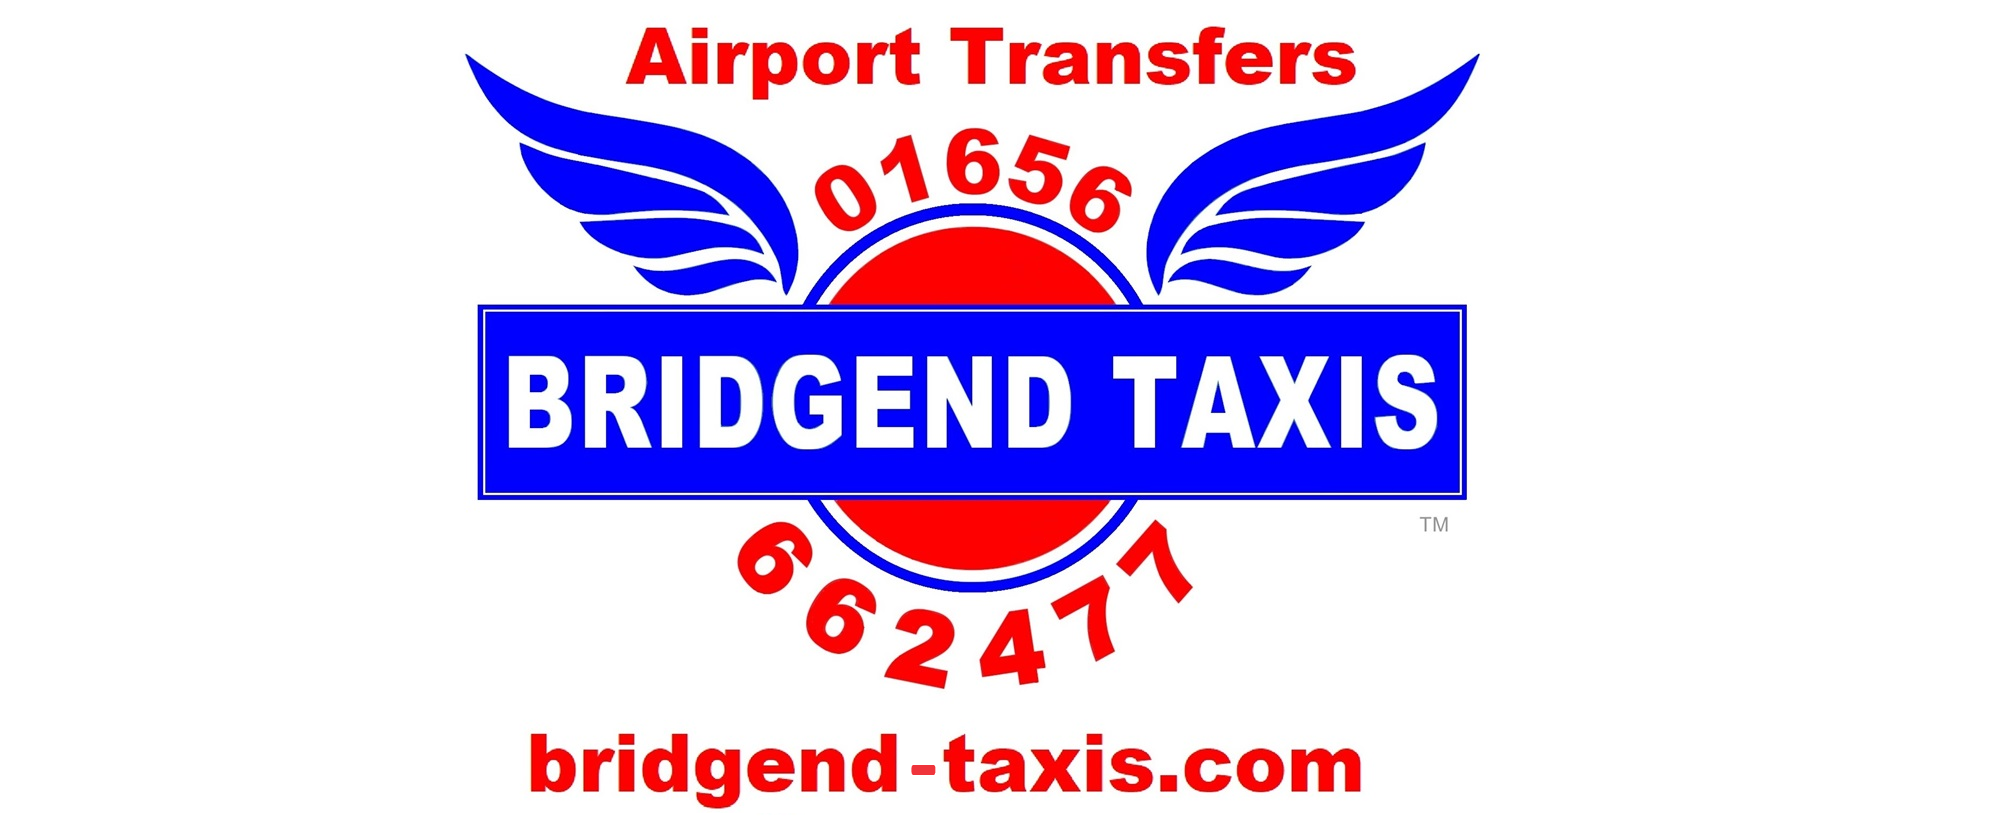 Bridgend Taxis 2014